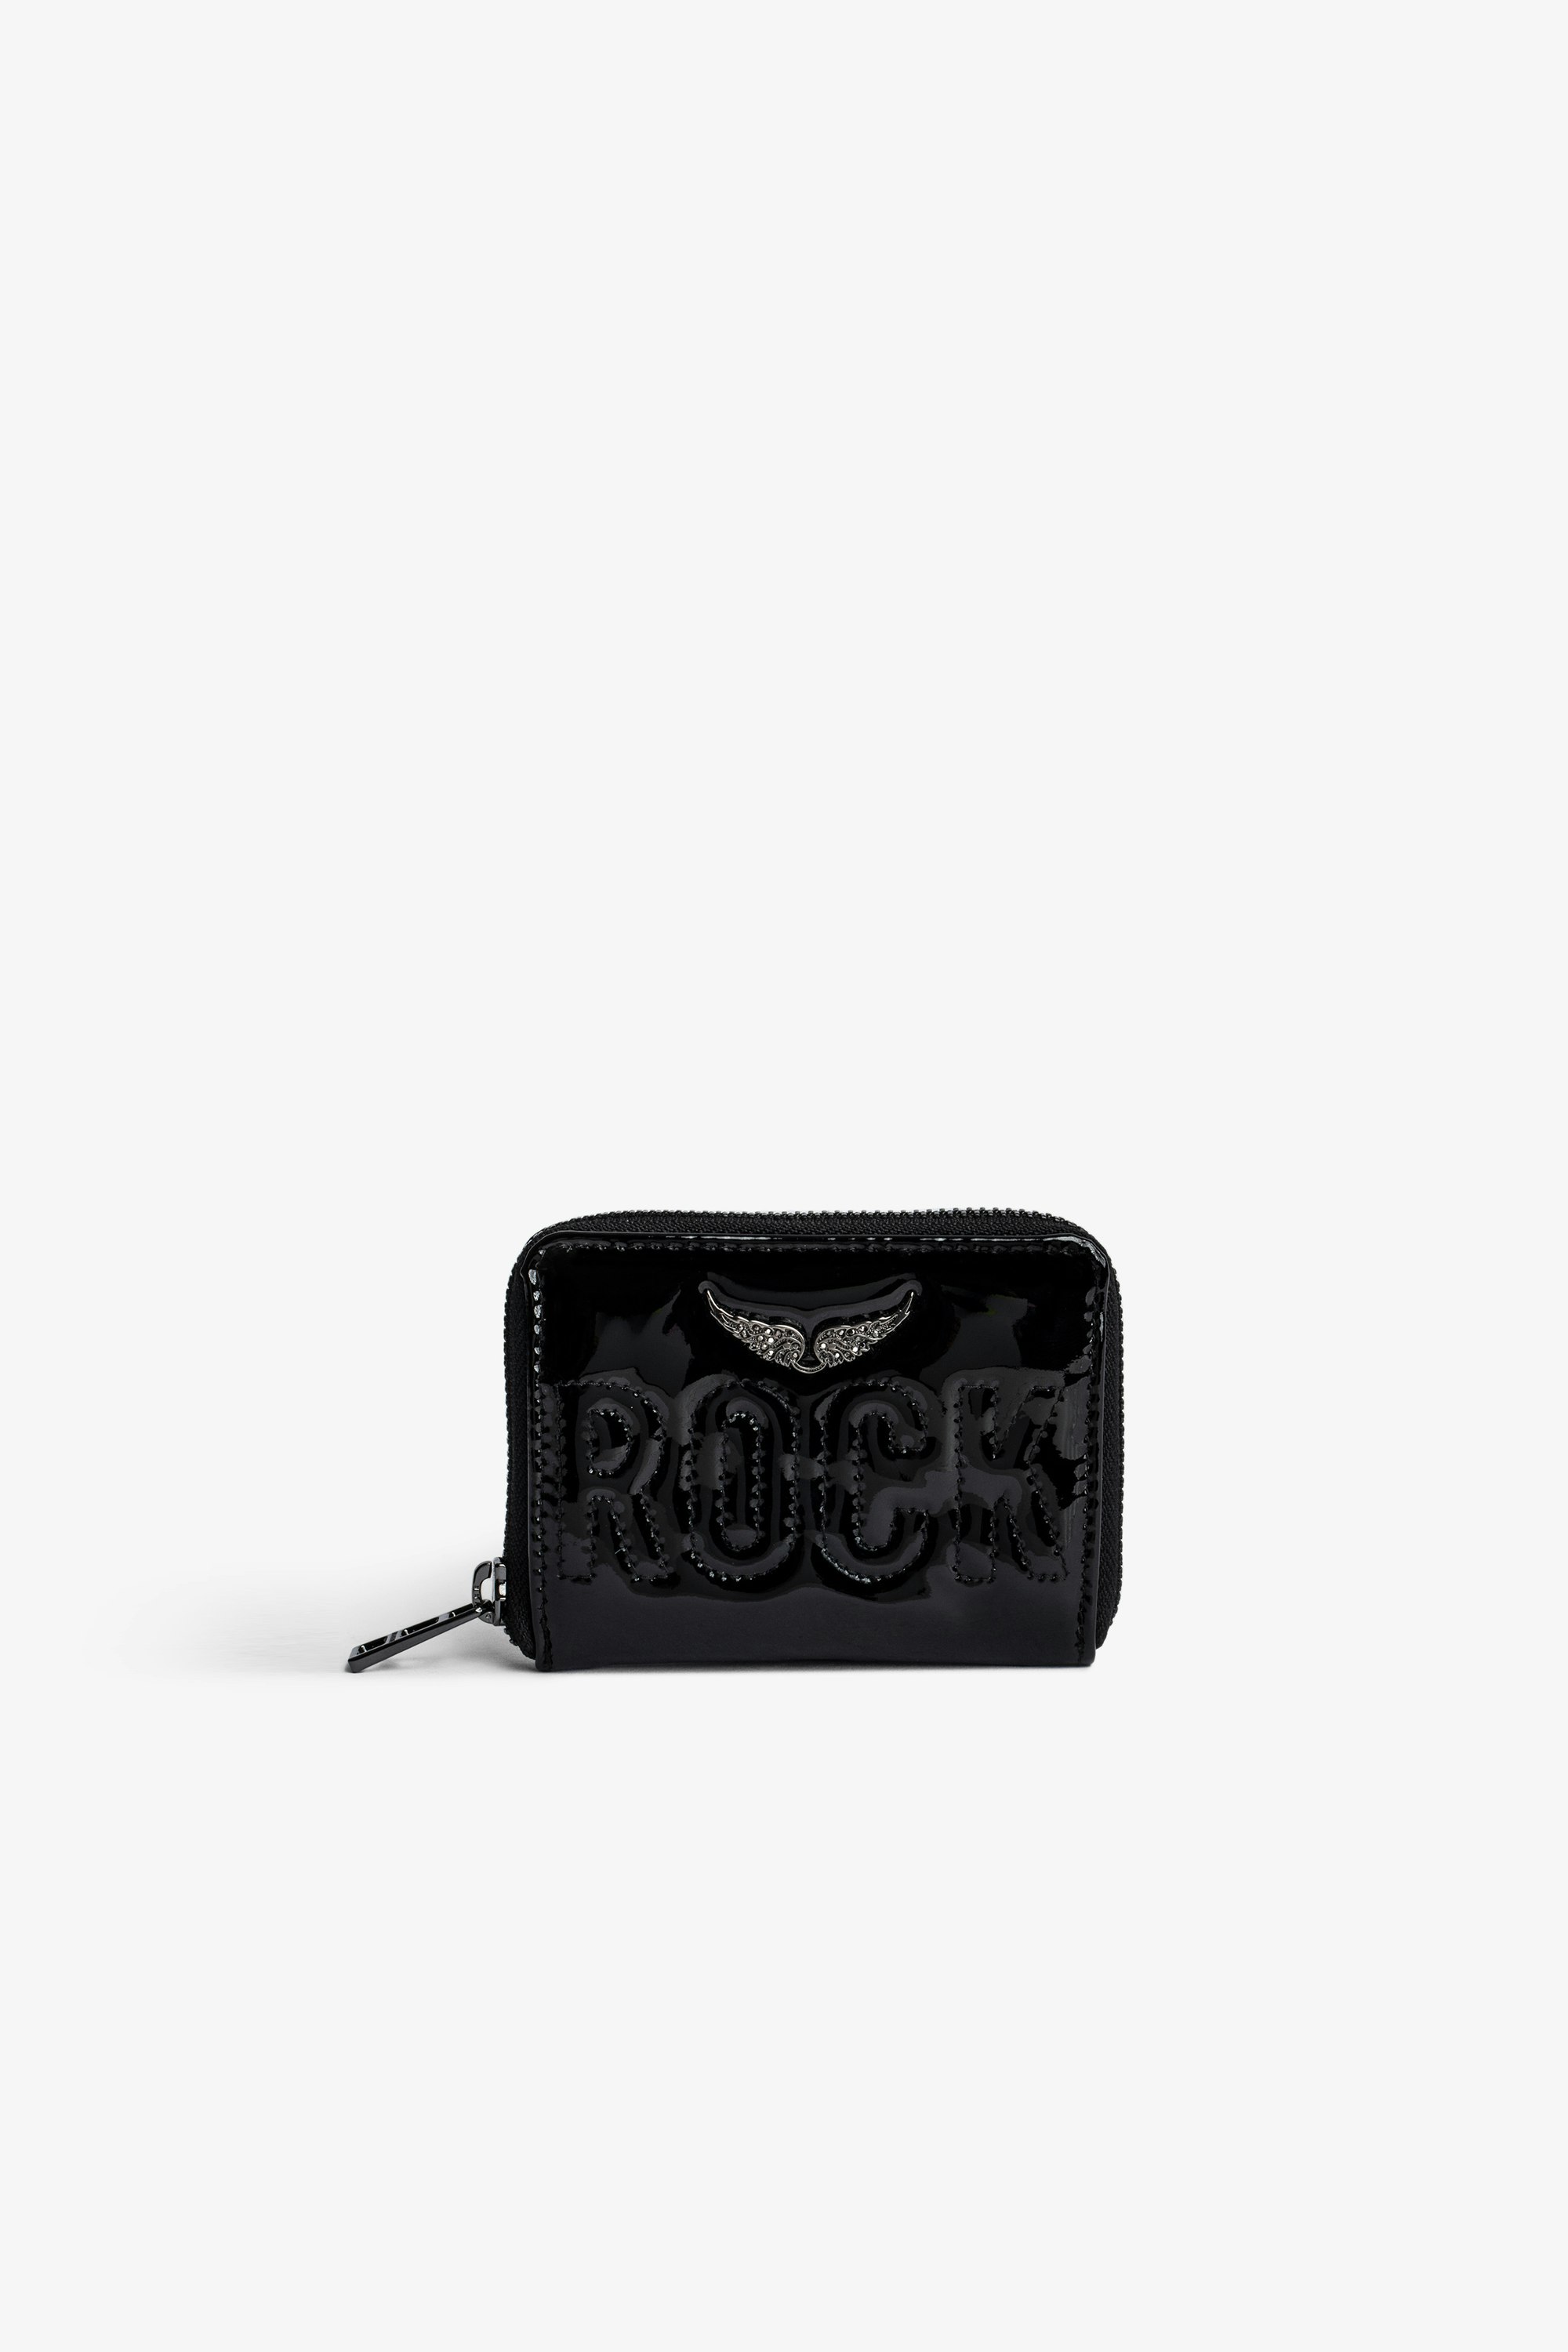 Portemonnaie Mini ZV Damen-Portemonnaie mit Reißverschluss aus glänzendem schwarzen Leder mit aufgestepptem Schriftzug „Rock“ und einem kristallbesetztem Flügel-Charm